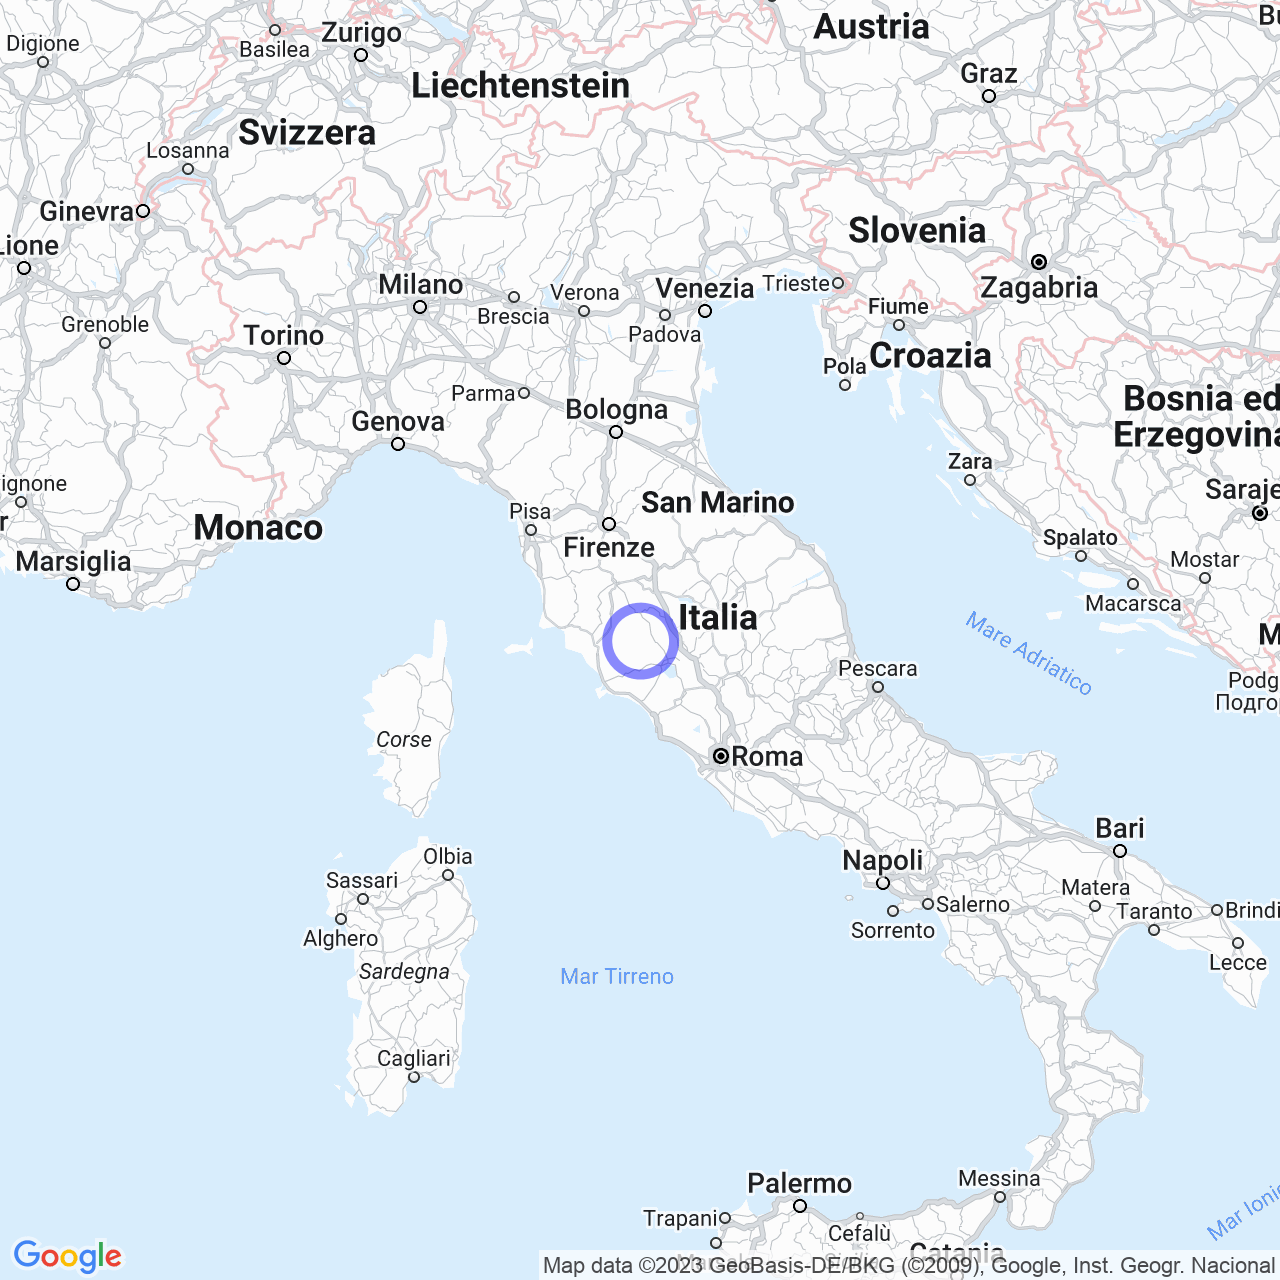 La contea di Santa Fiora: storia e mistero della Toscana meridionale